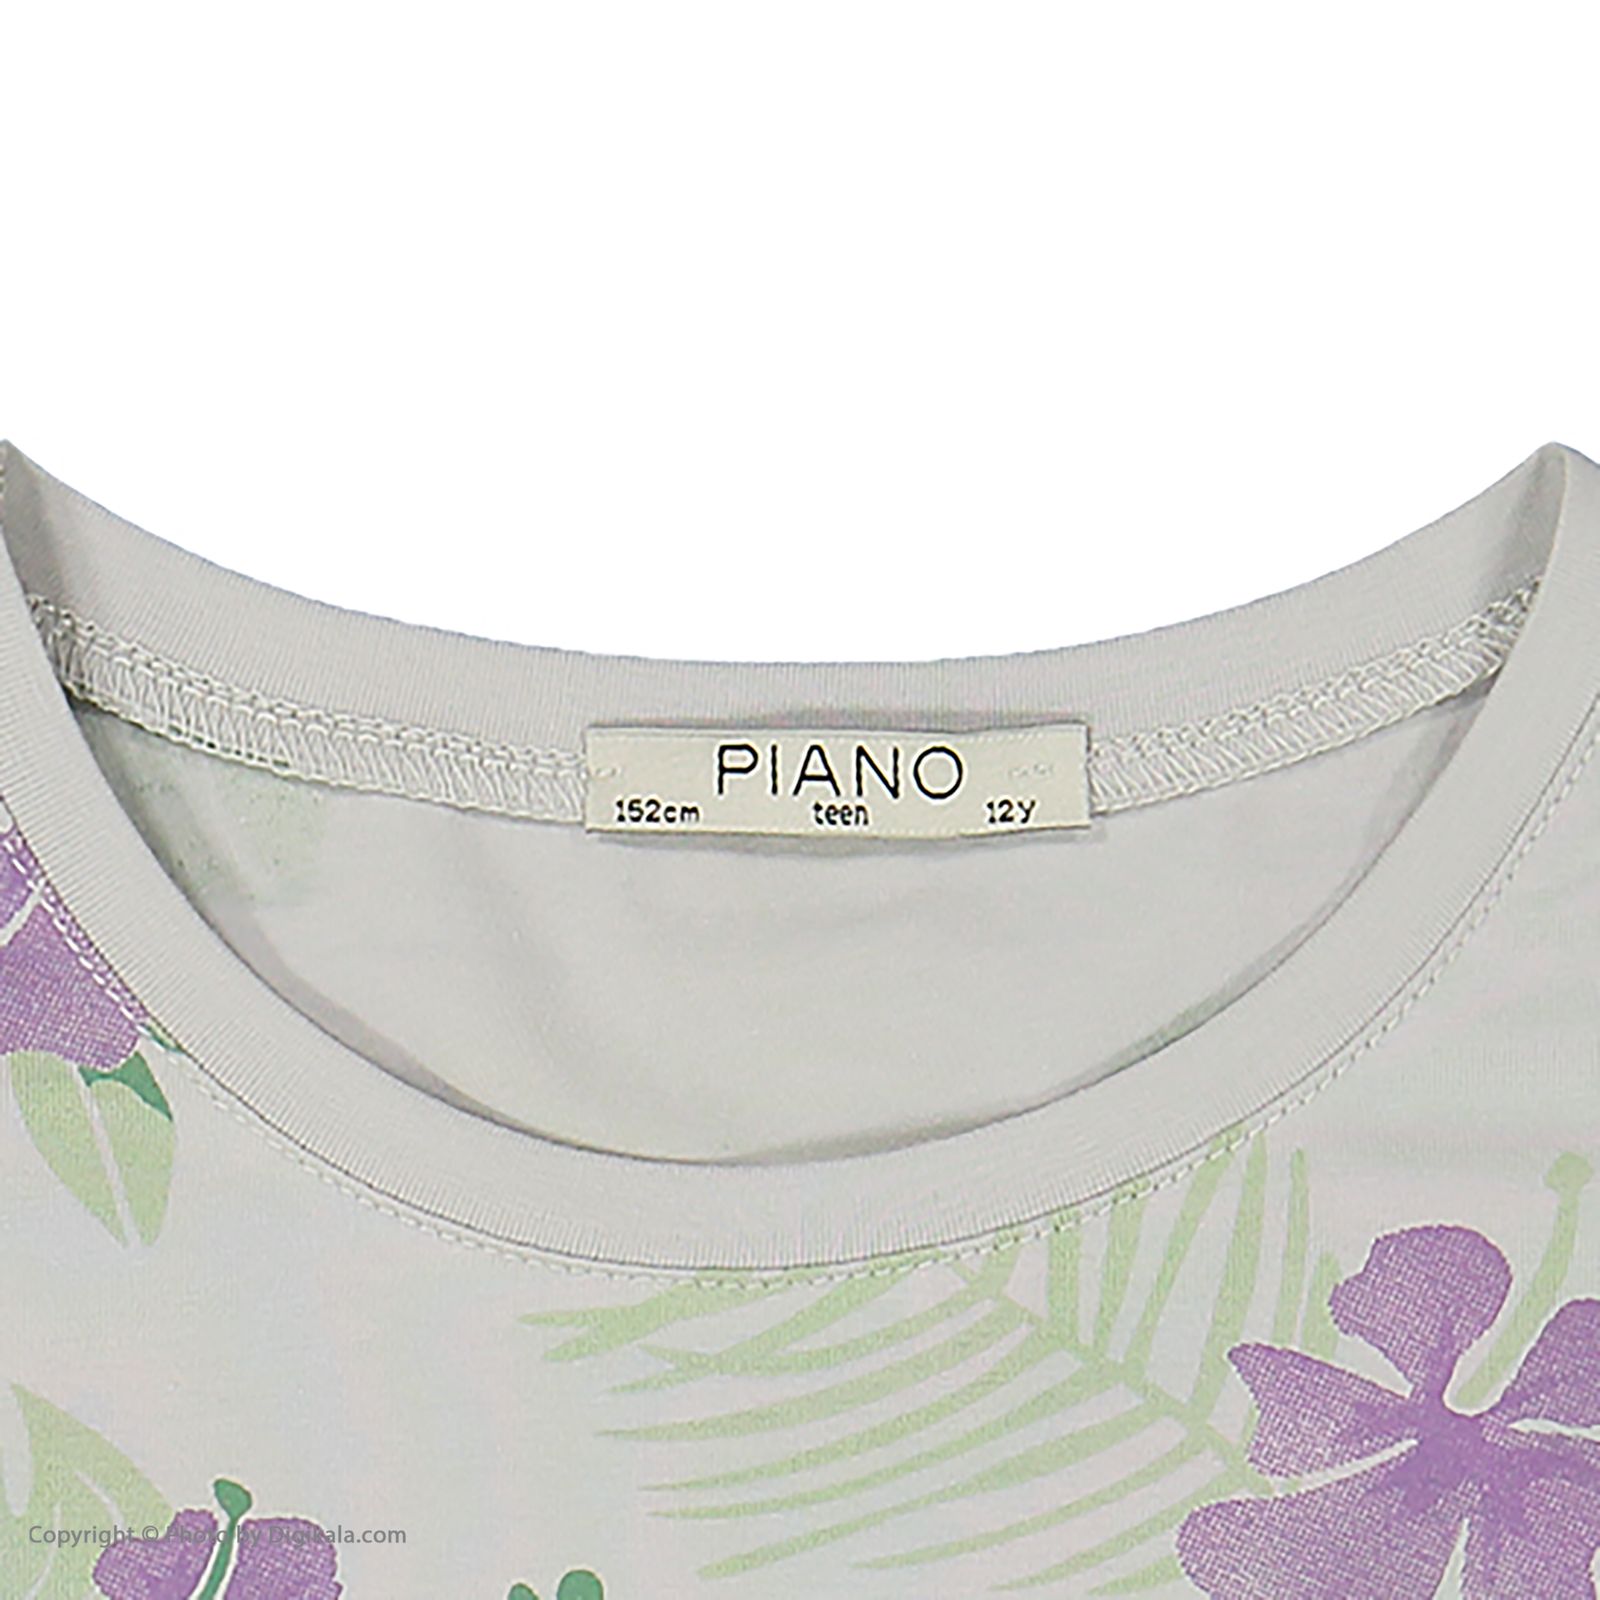 تی شرت دخترانه پیانو مدل 1415-93 -  - 5